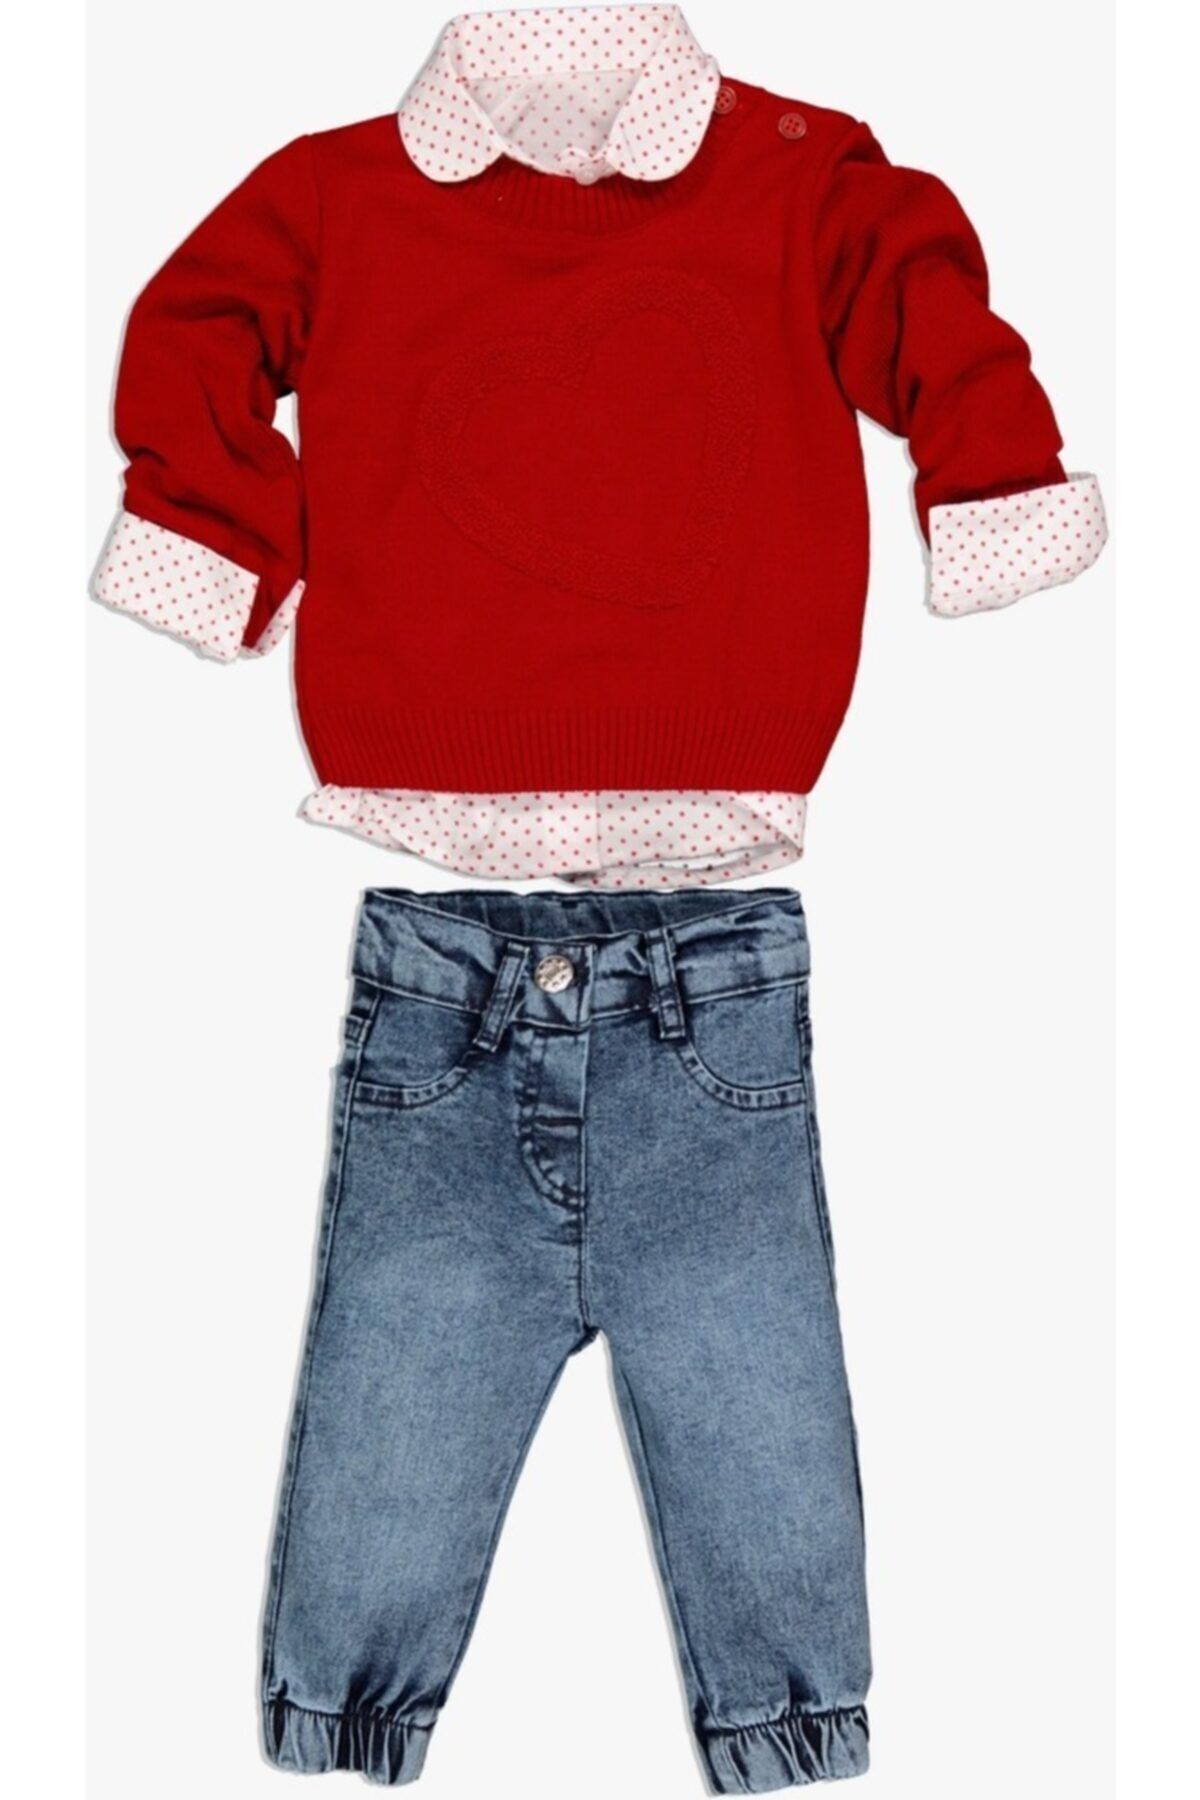 Concept. Concept Kız Bebek Kırmızı Kalpli Kazaklı Gömlek Pantolon 3lü Alt Üst Takım